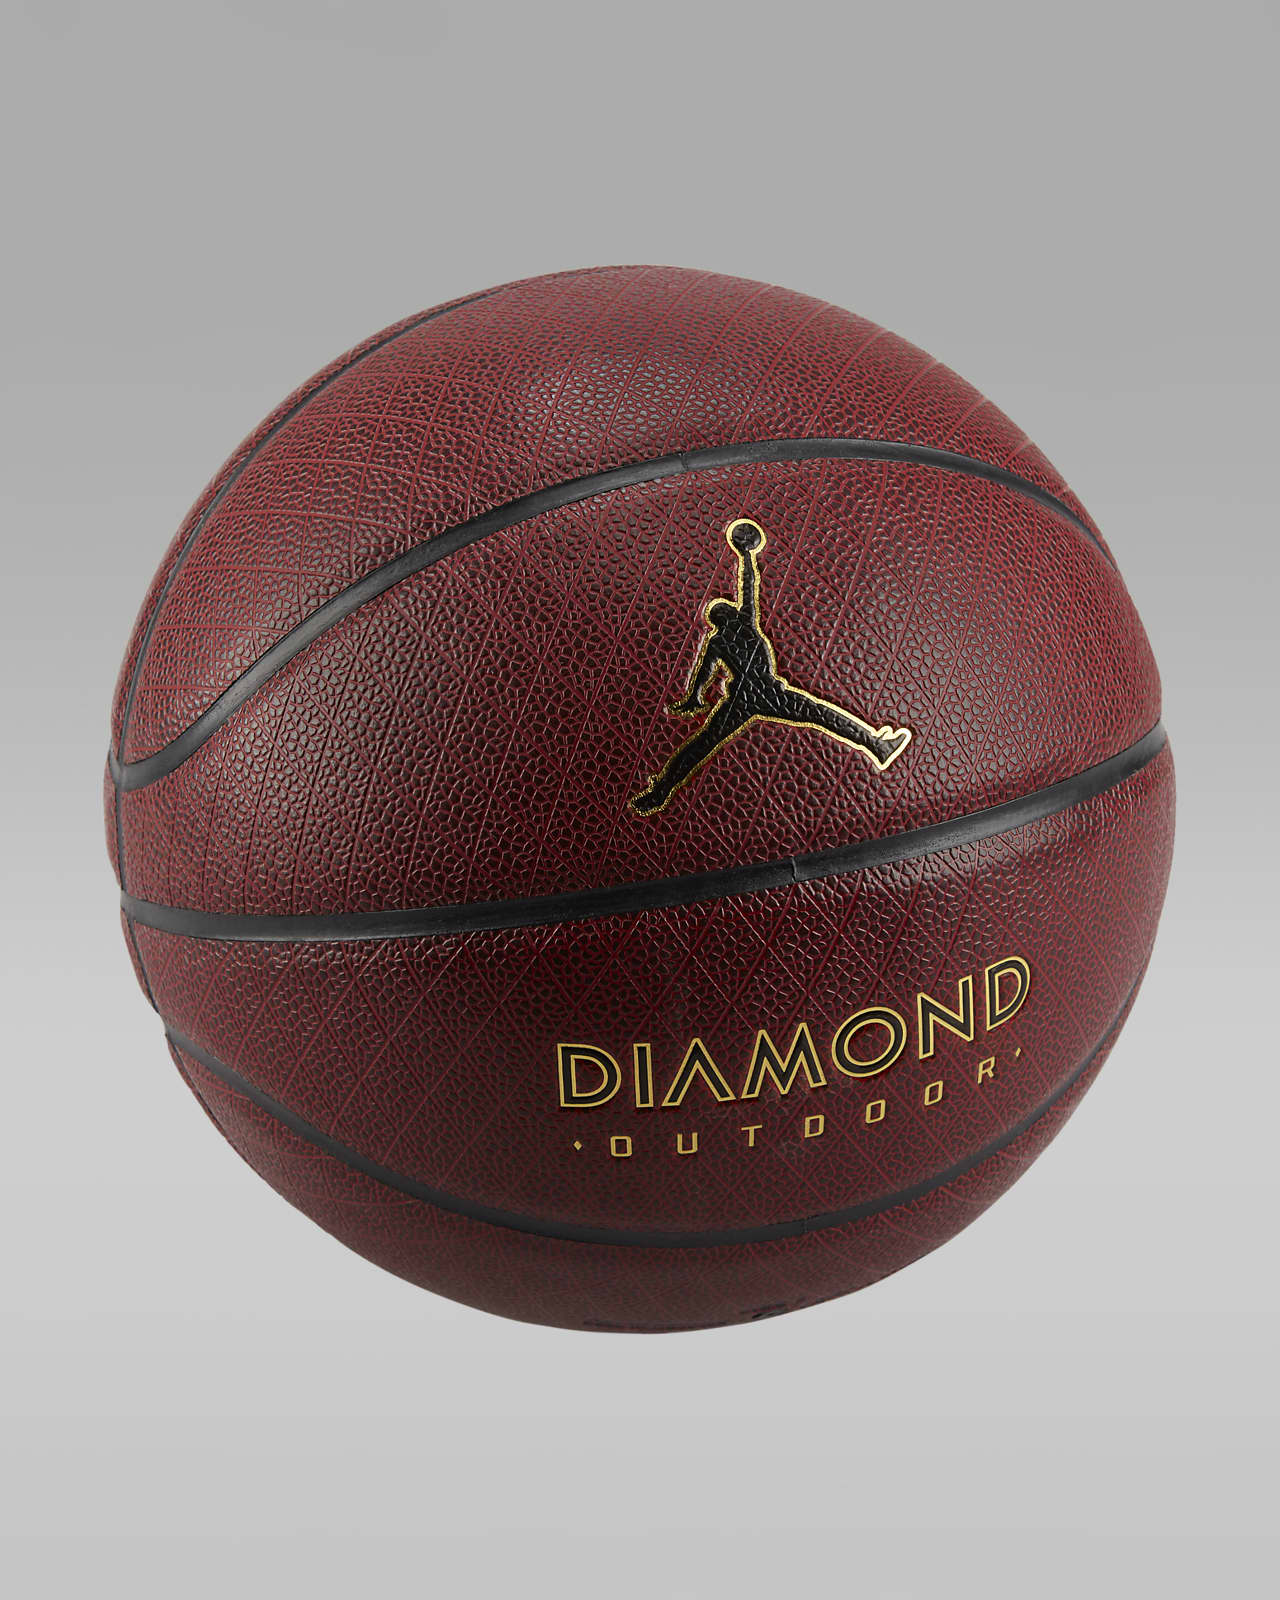 Balón de básquetbol Jordan Diamond Outdoor 8P